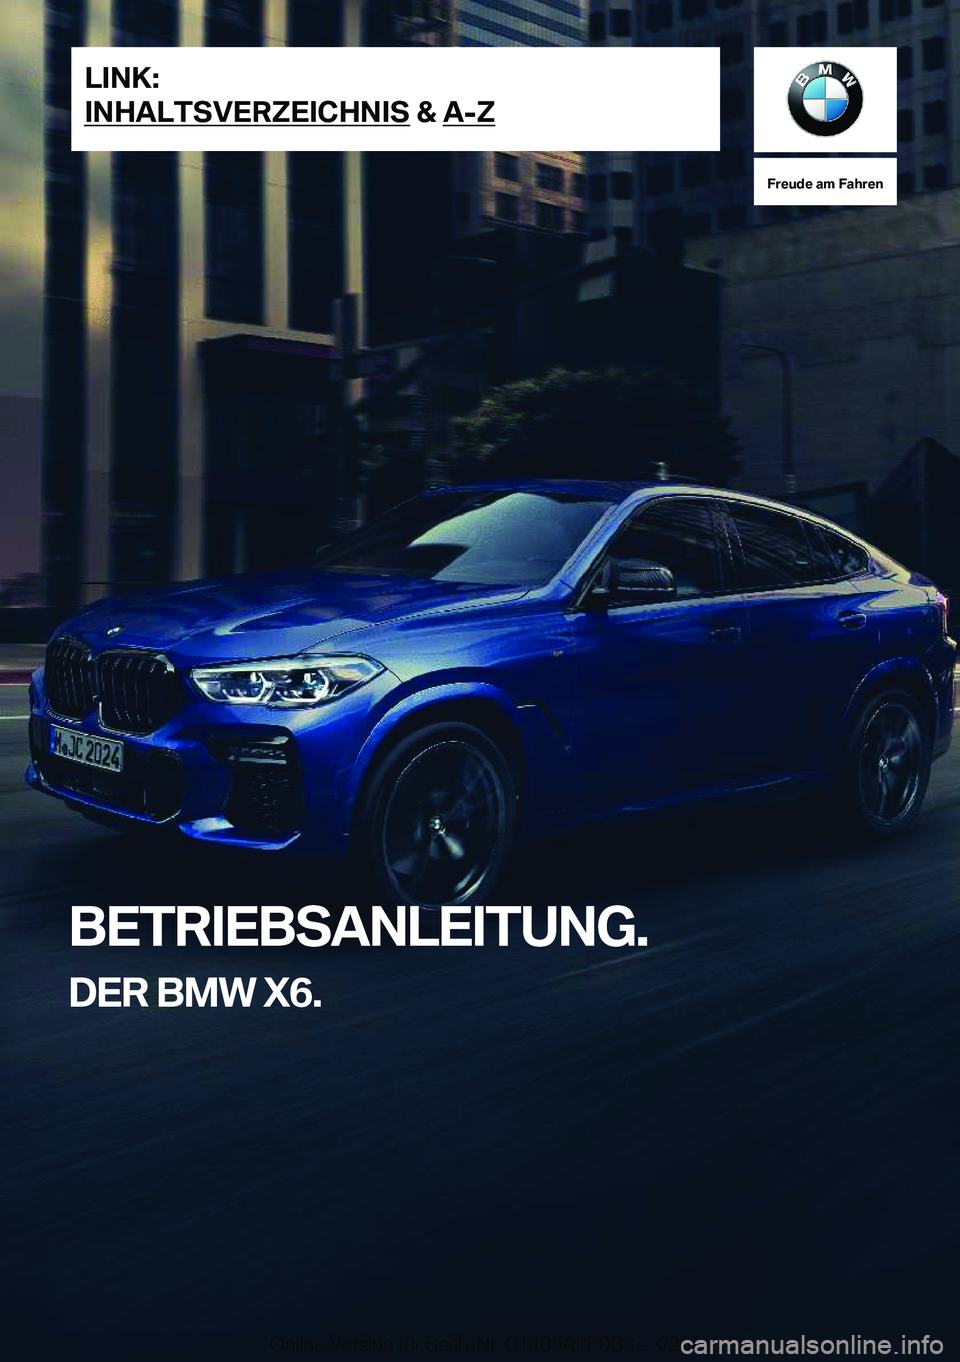 BMW X6 2021  Betriebsanleitungen (in German) �F�r�e�u�d�e��a�m��F�a�h�r�e�n
�B�E�T�R�I�E�B�S�A�N�L�E�I�T�U�N�G�.�D�E�R��B�M�W��X�6�.�L�I�N�K�:
�I�N�H�A�L�T�S�V�E�R�Z�E�I�C�H�N�I�S��&��A�-�Z�O�n�l�i�n�e��V�e�r�s�i�o�n��f�